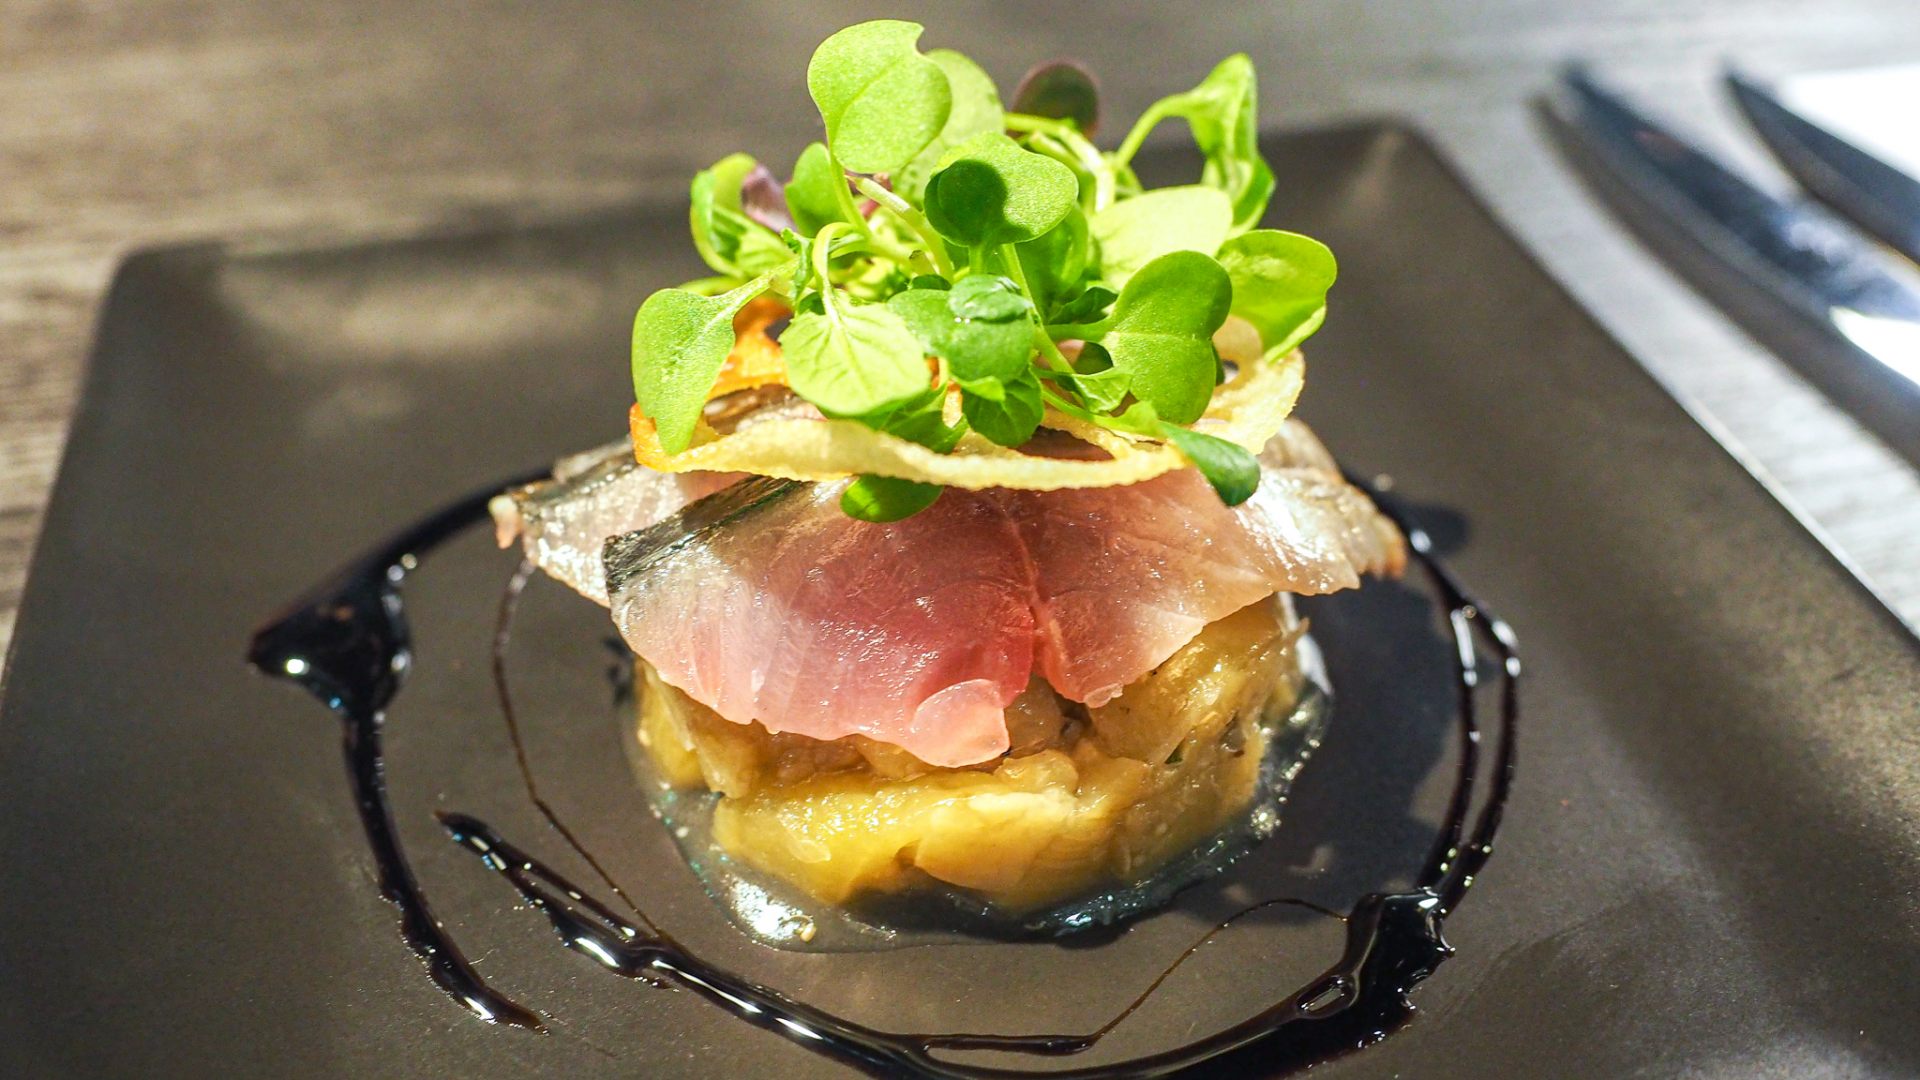 アンティパスト「鯖と焼き茄子のタルタル仕立て」|Appetizer "Marinated mackerel with eggplant steak tartar"